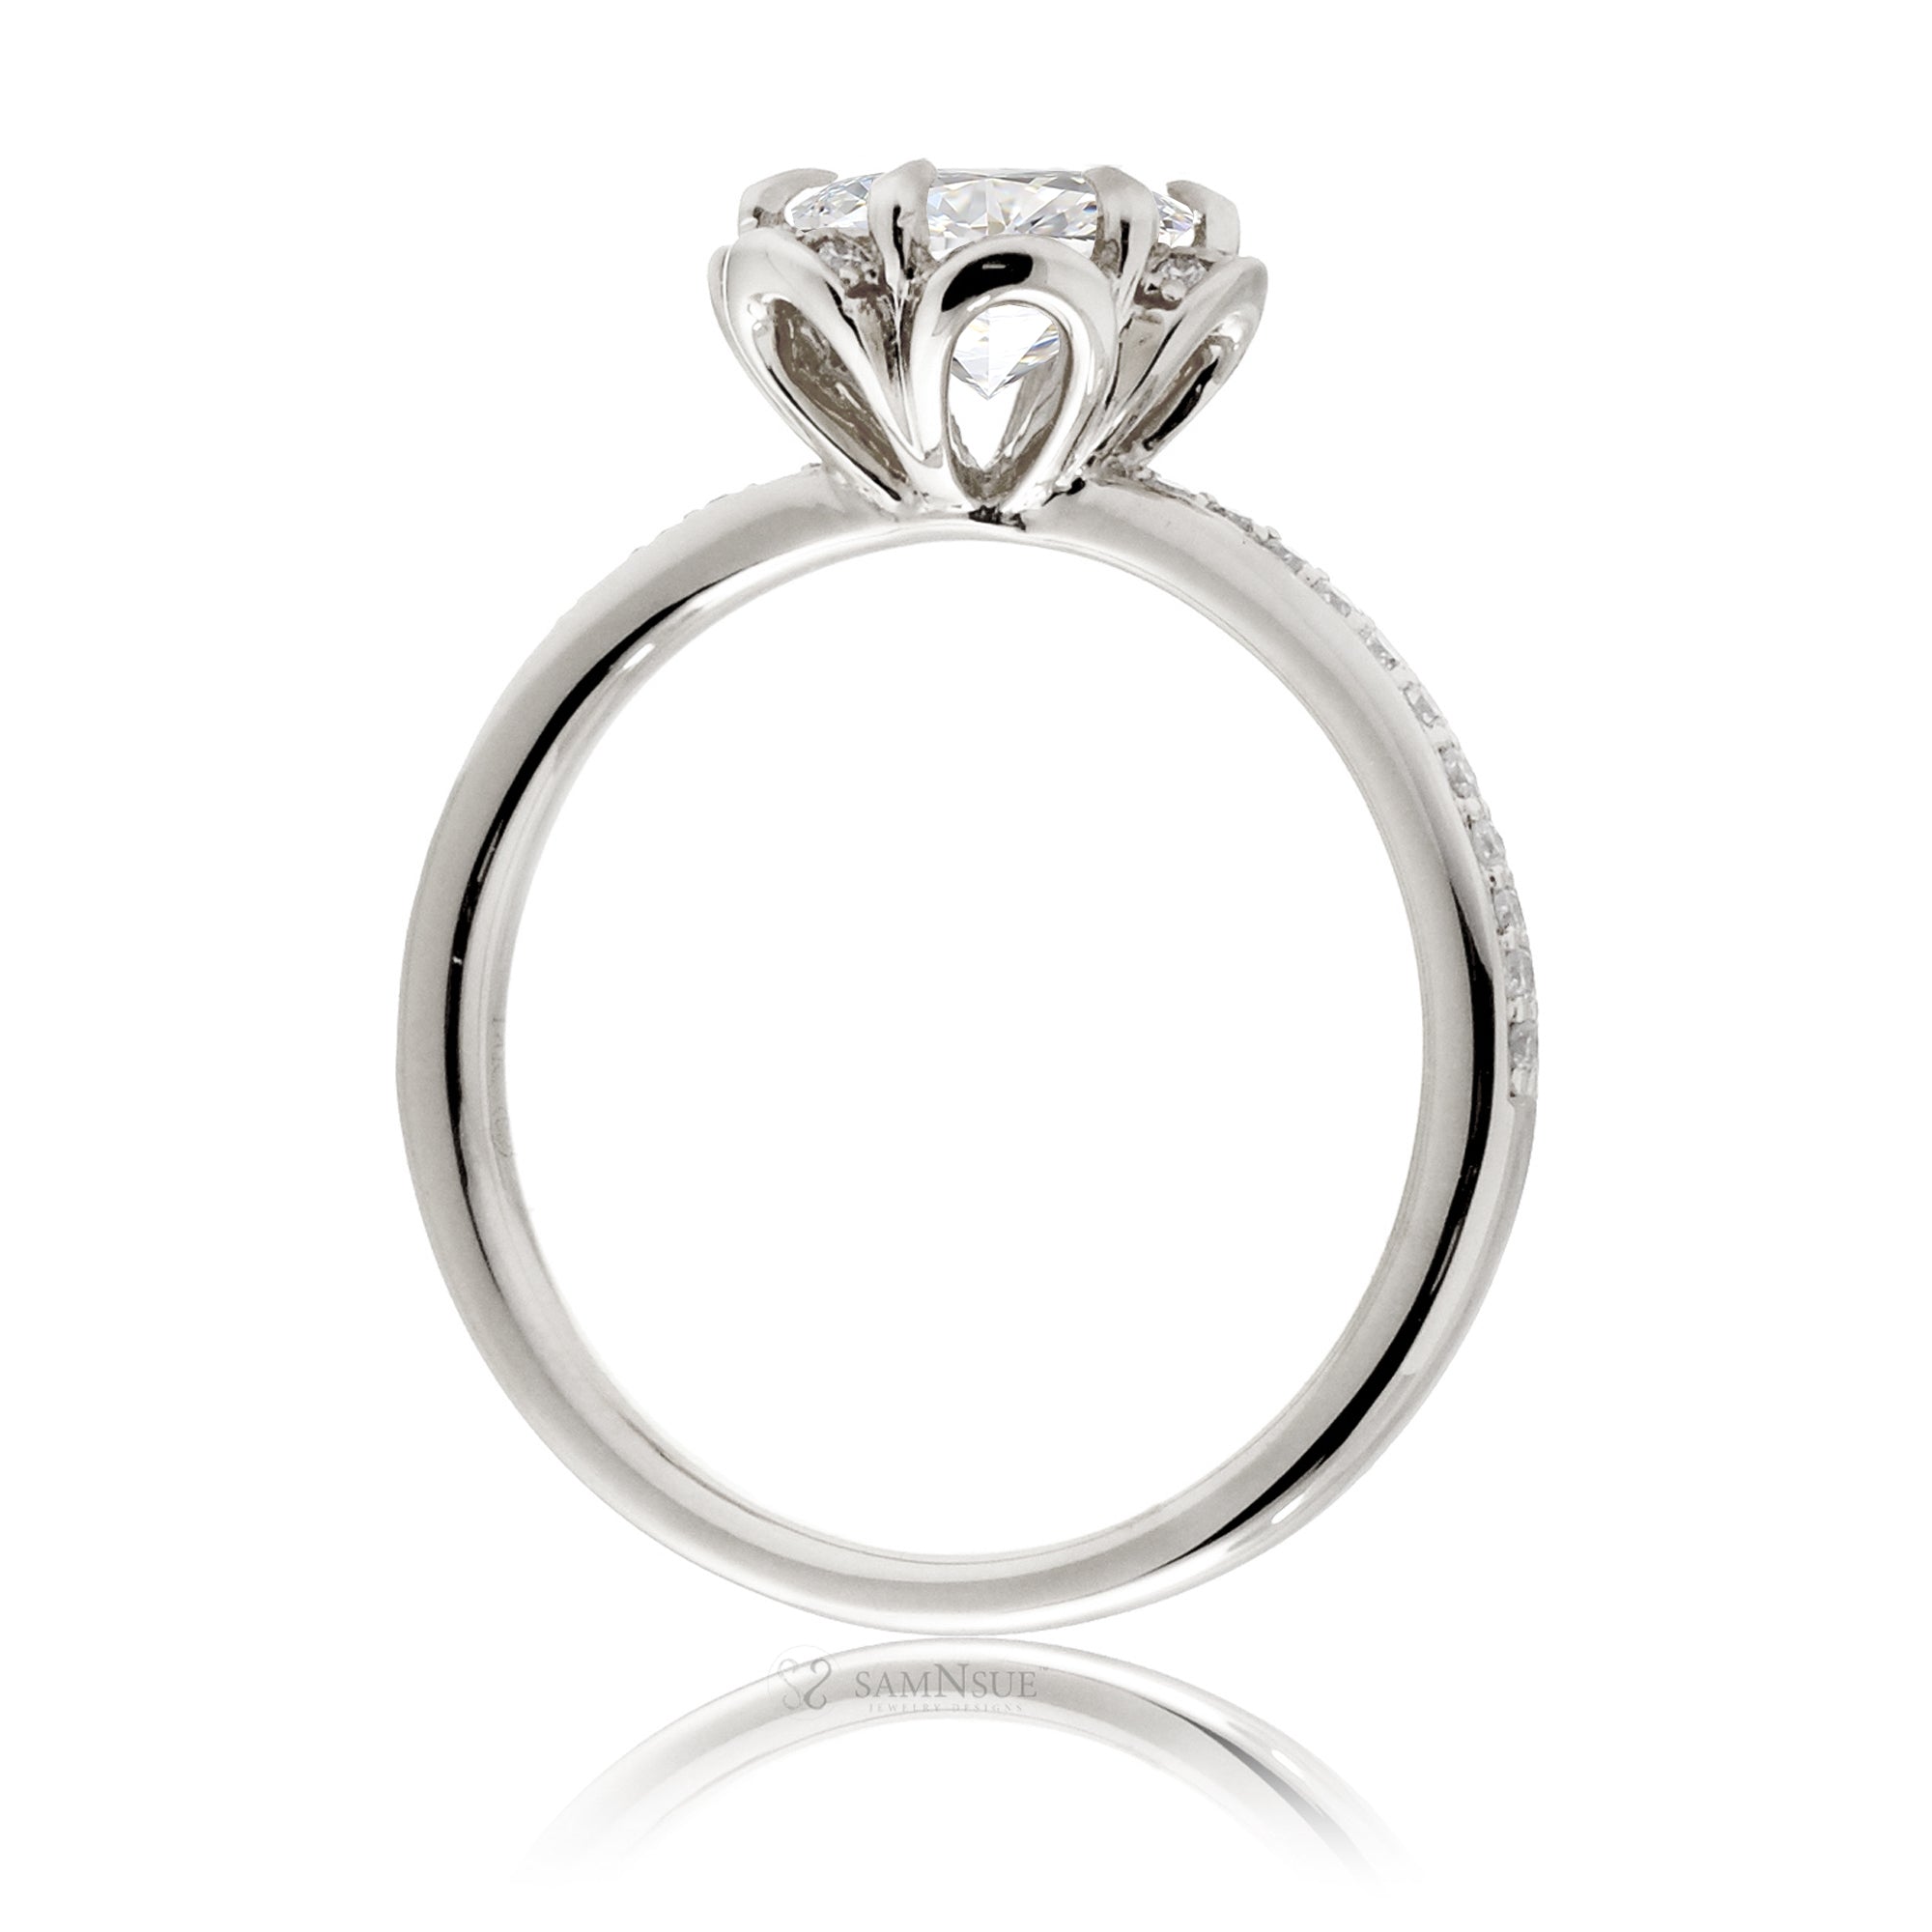 Flower design diamond engagement ring white gold